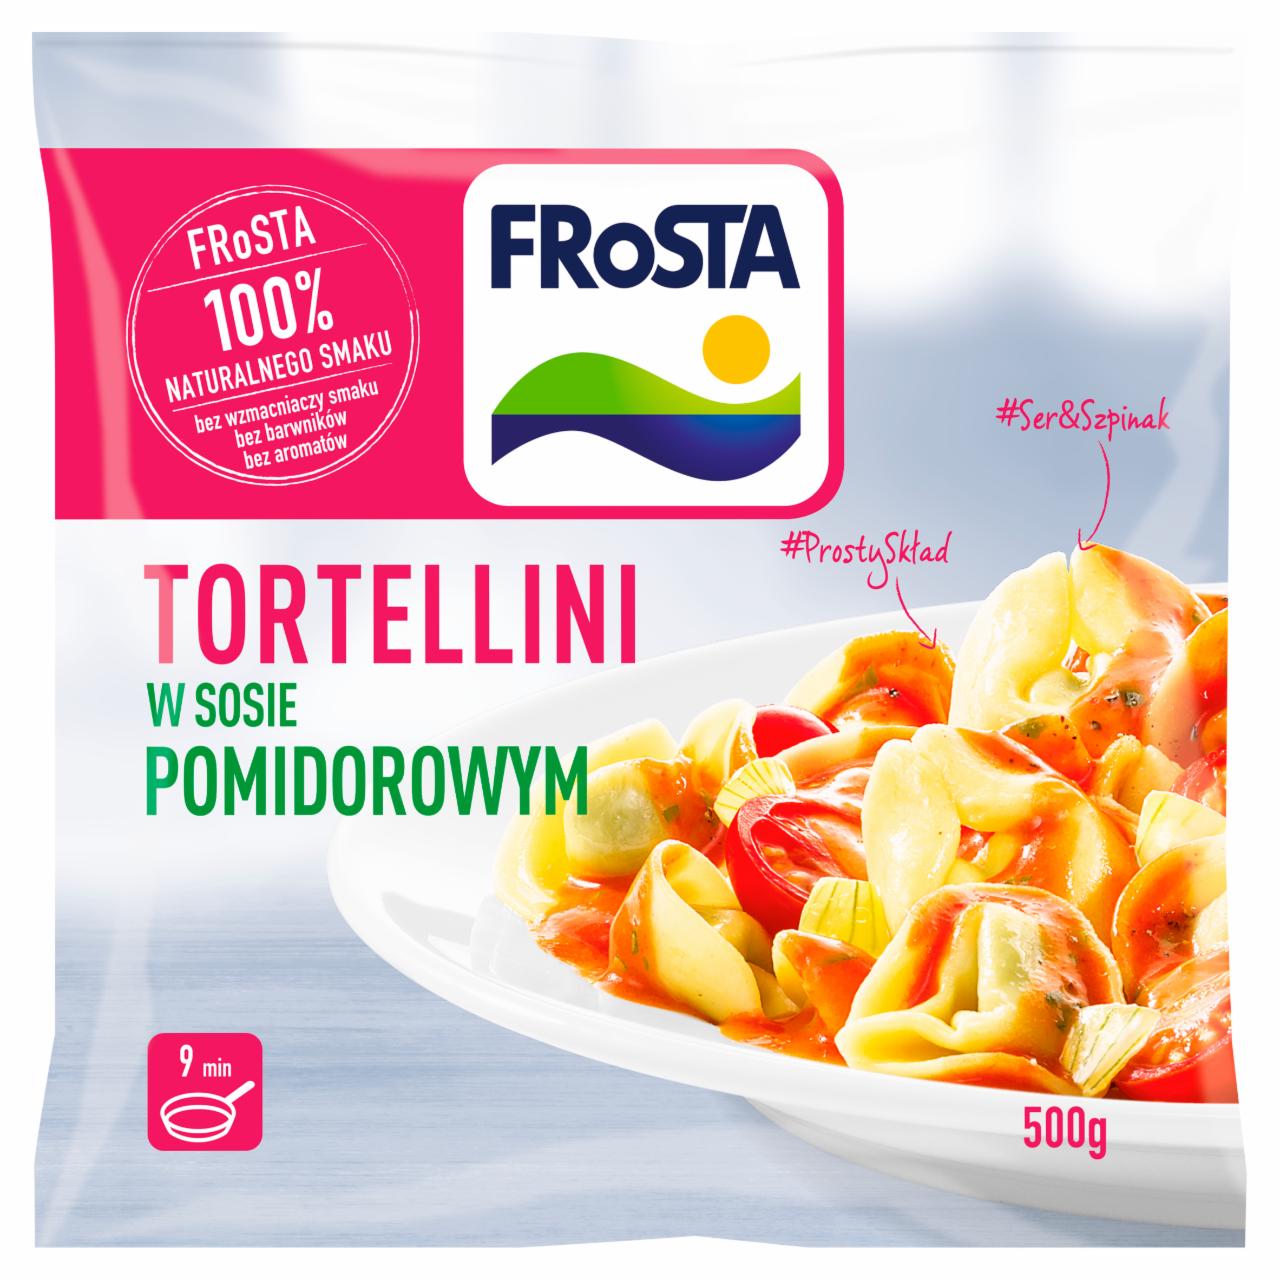 Zdjęcia - FRoSTA Tortellini w sosie pomidorowym z warzywami 450 g